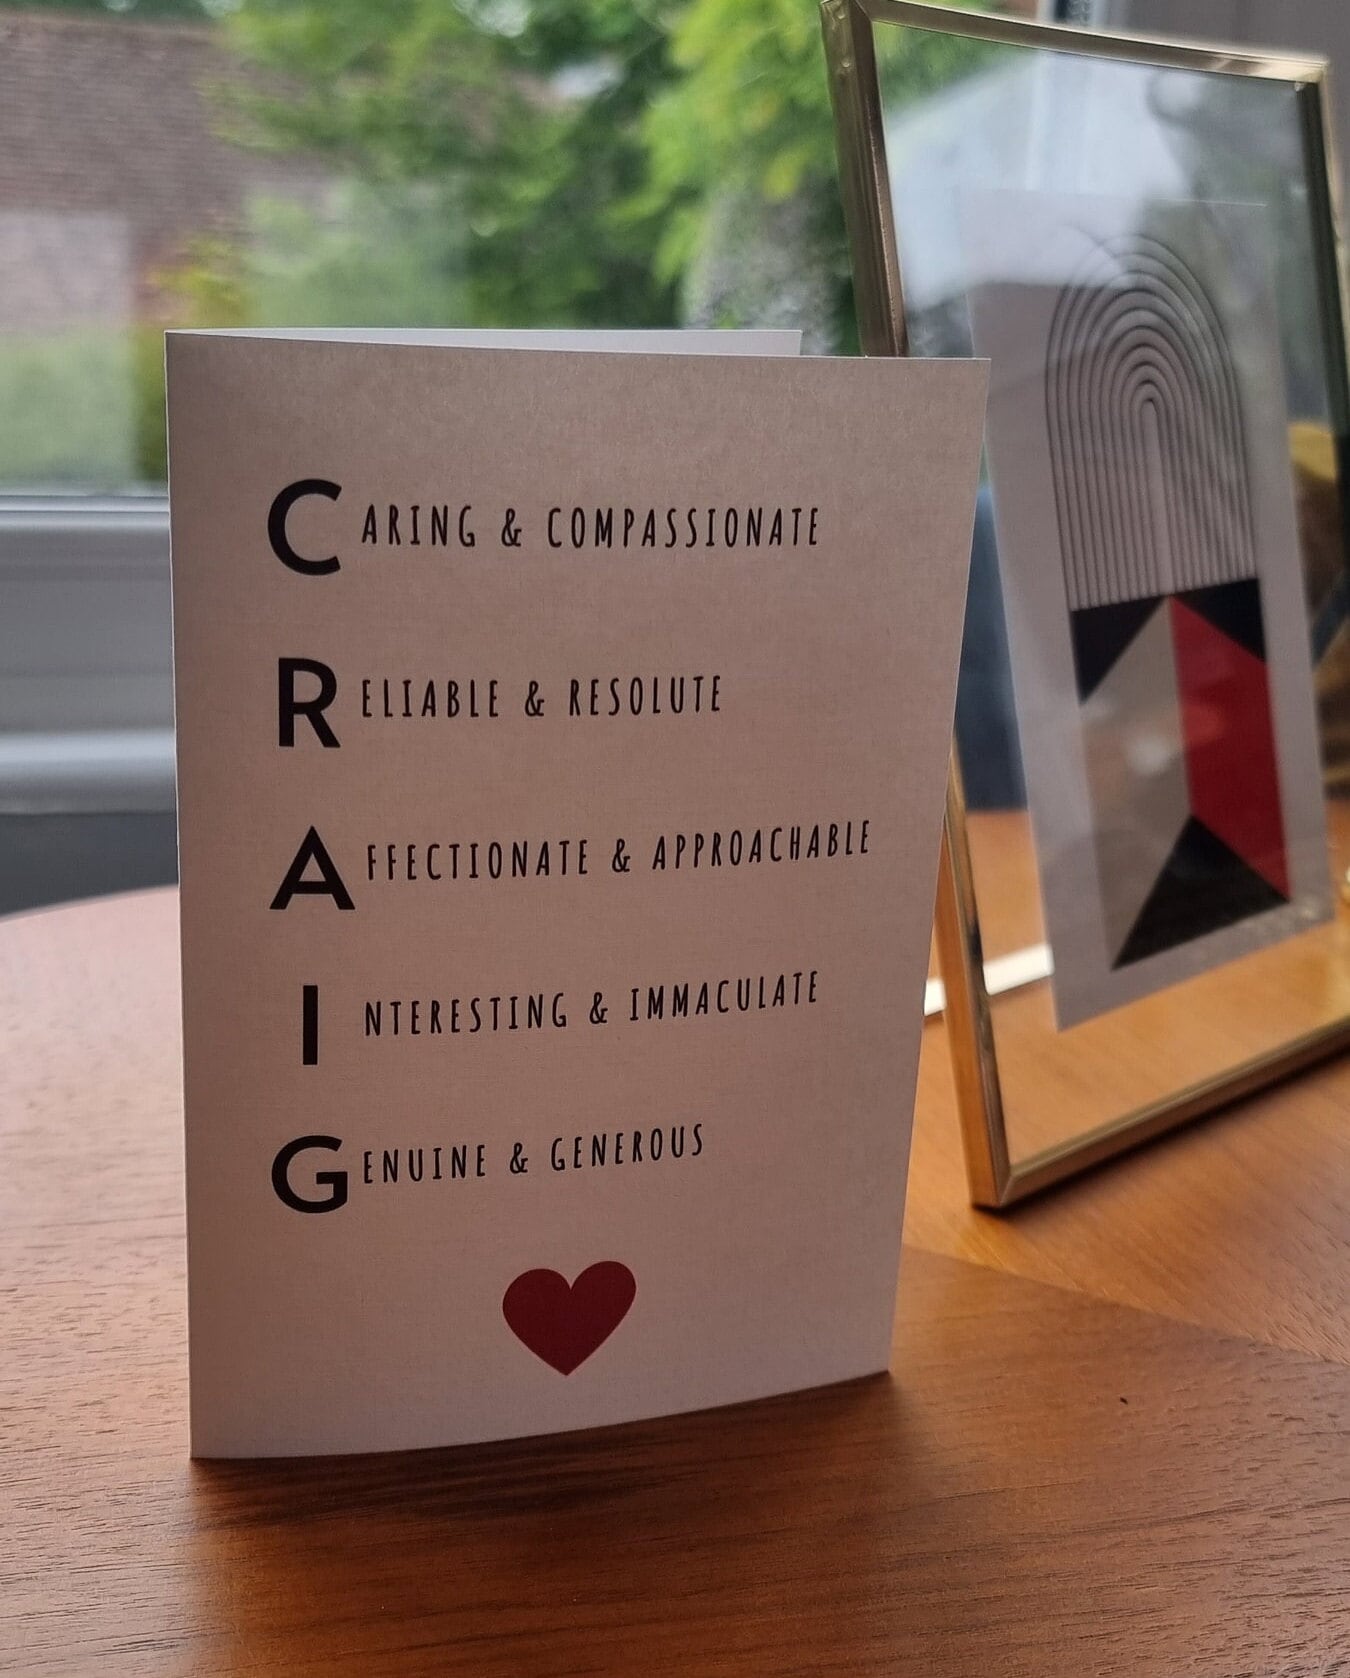 Unique Acrostic Poem Cards: Personalized and Heartfelt | Shop Now!